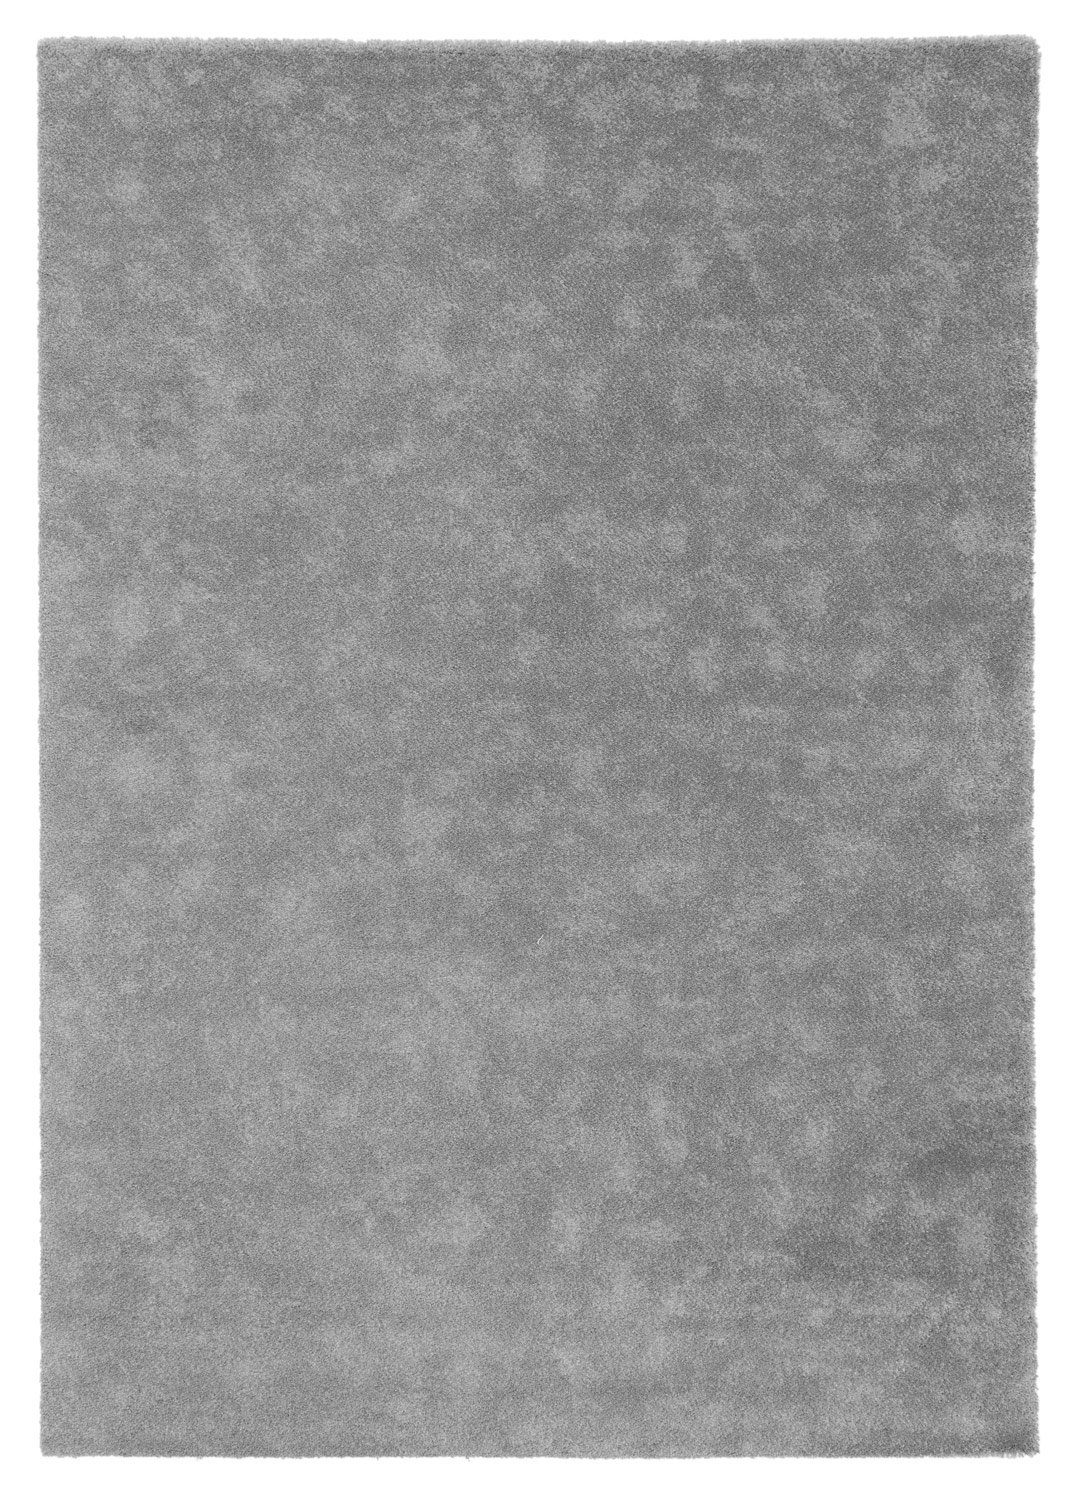 Teppich MOON, Polypropylen, Grau, 120 x 170 cm, Unifarben, Balta Rugs, rechteckig, Höhe: 17 mm